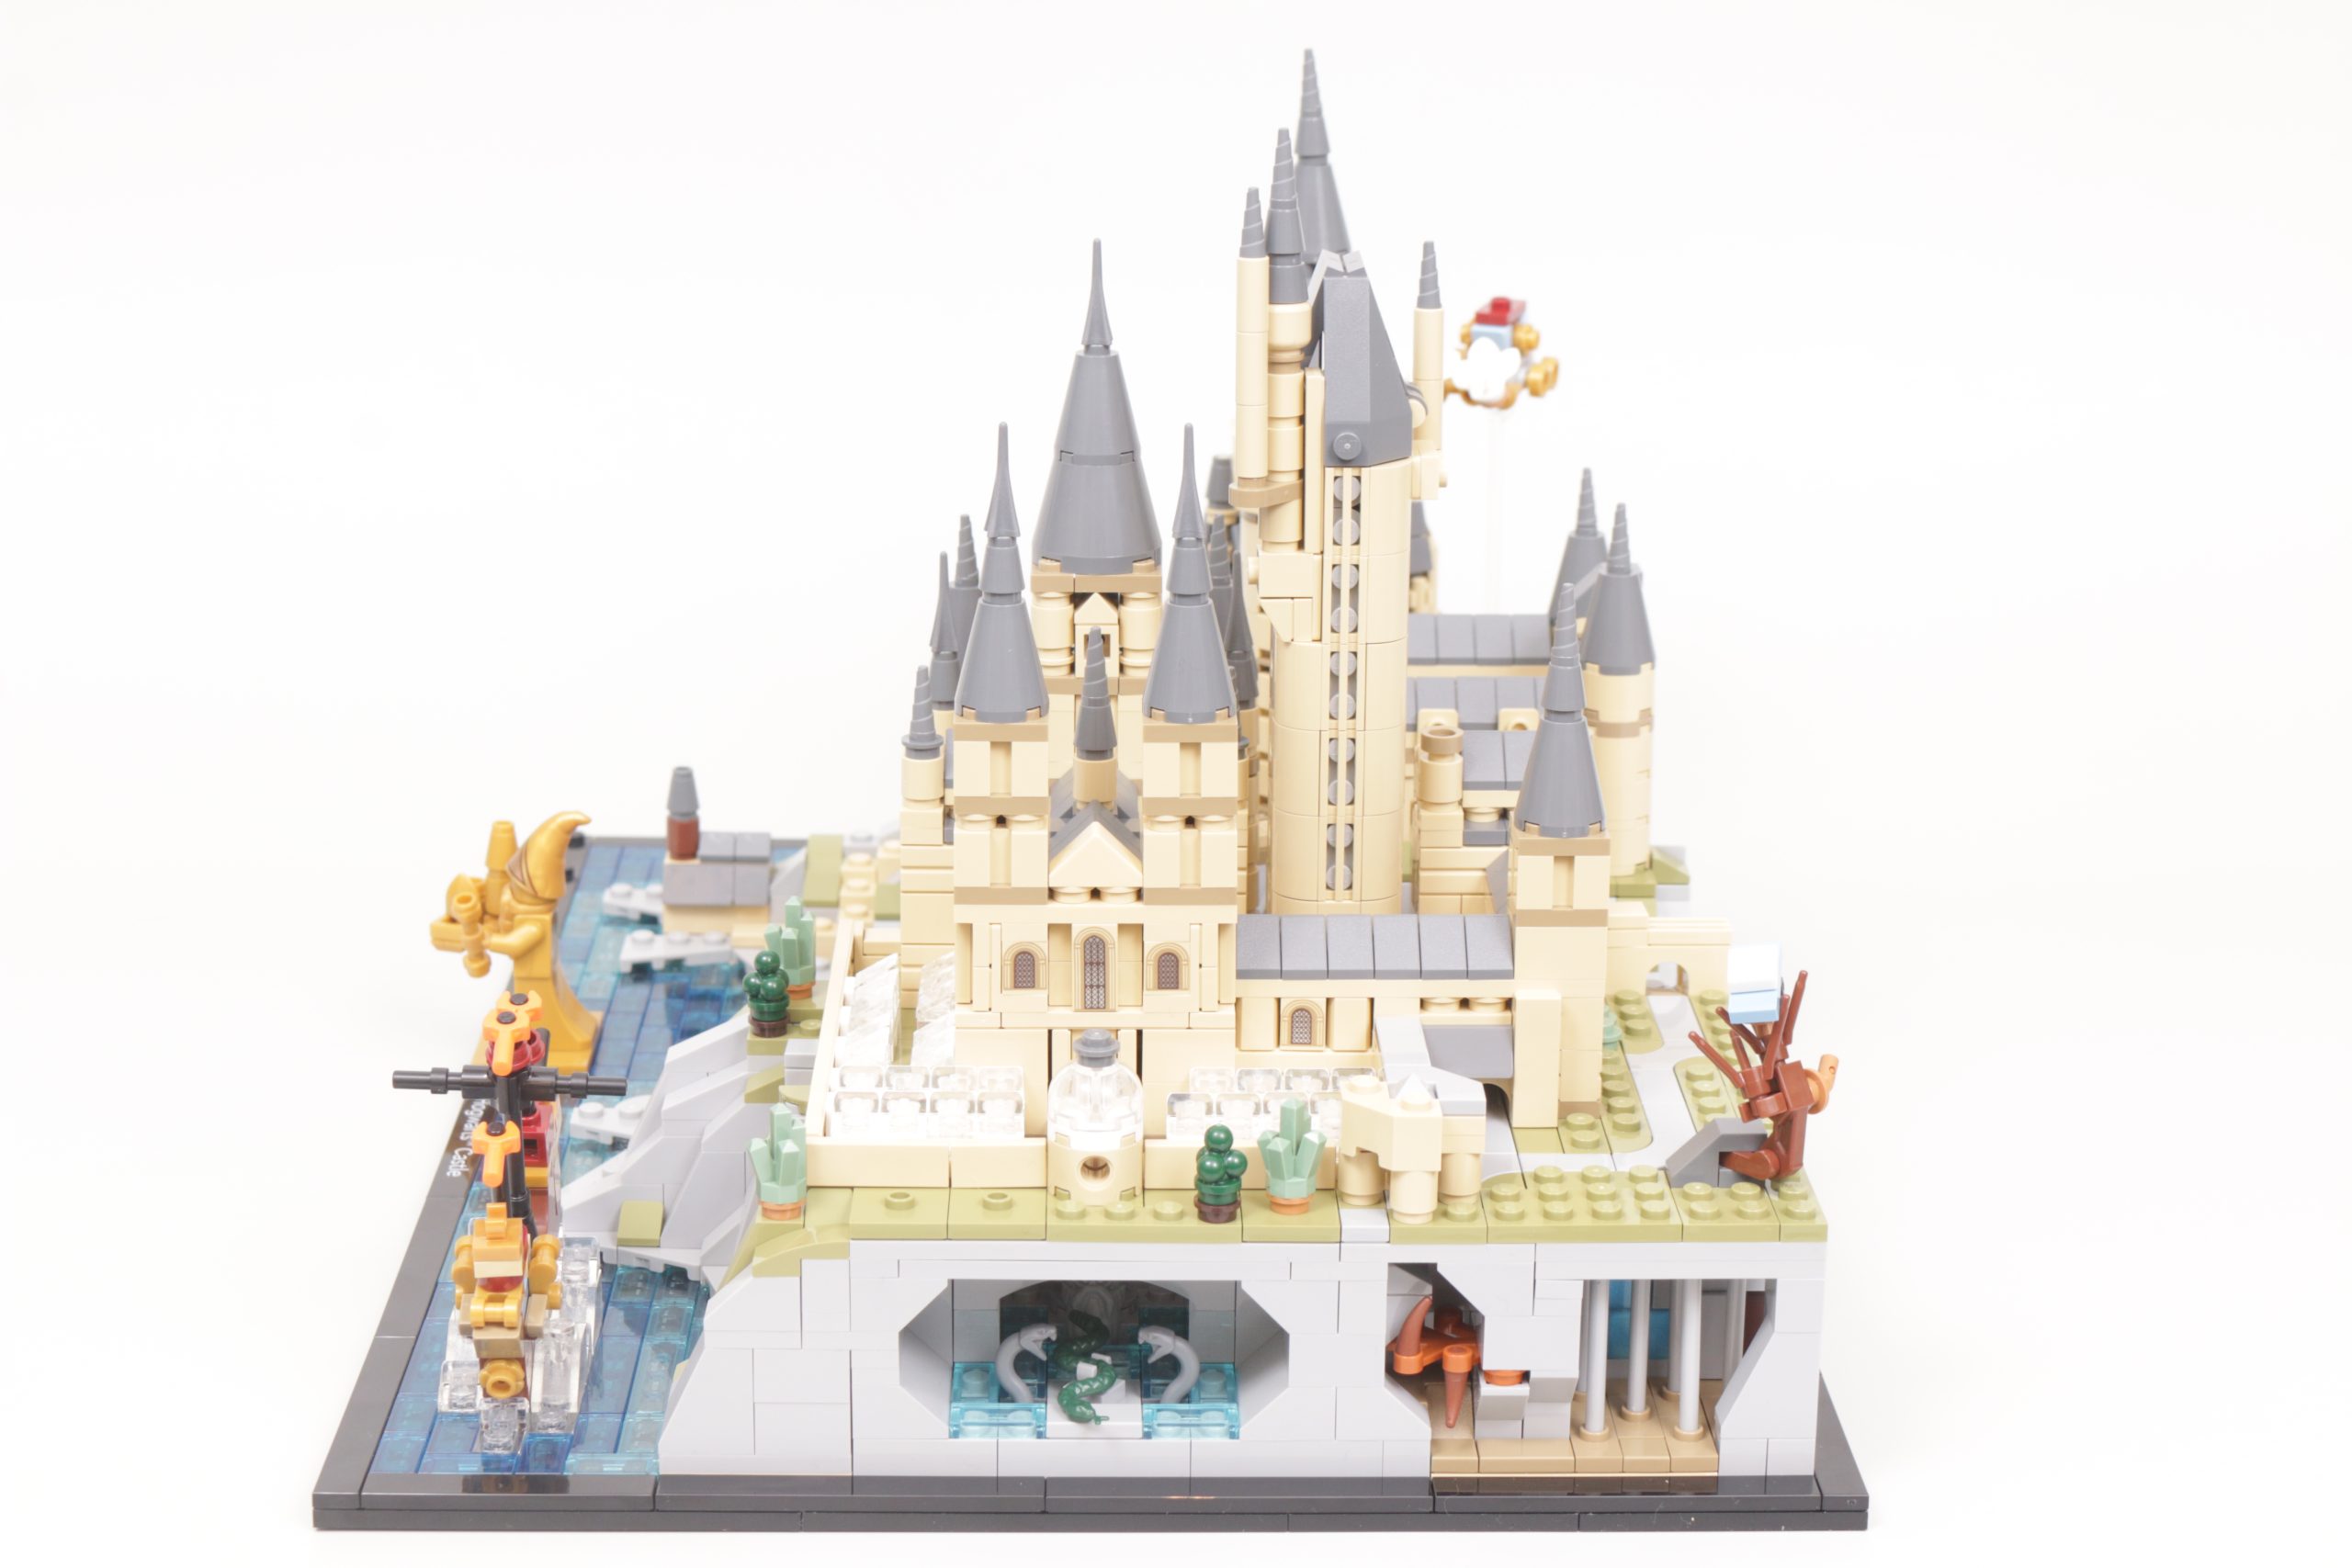 Melhor preço em LEGO Harry Potter Hogwarts Castelo e terrenos